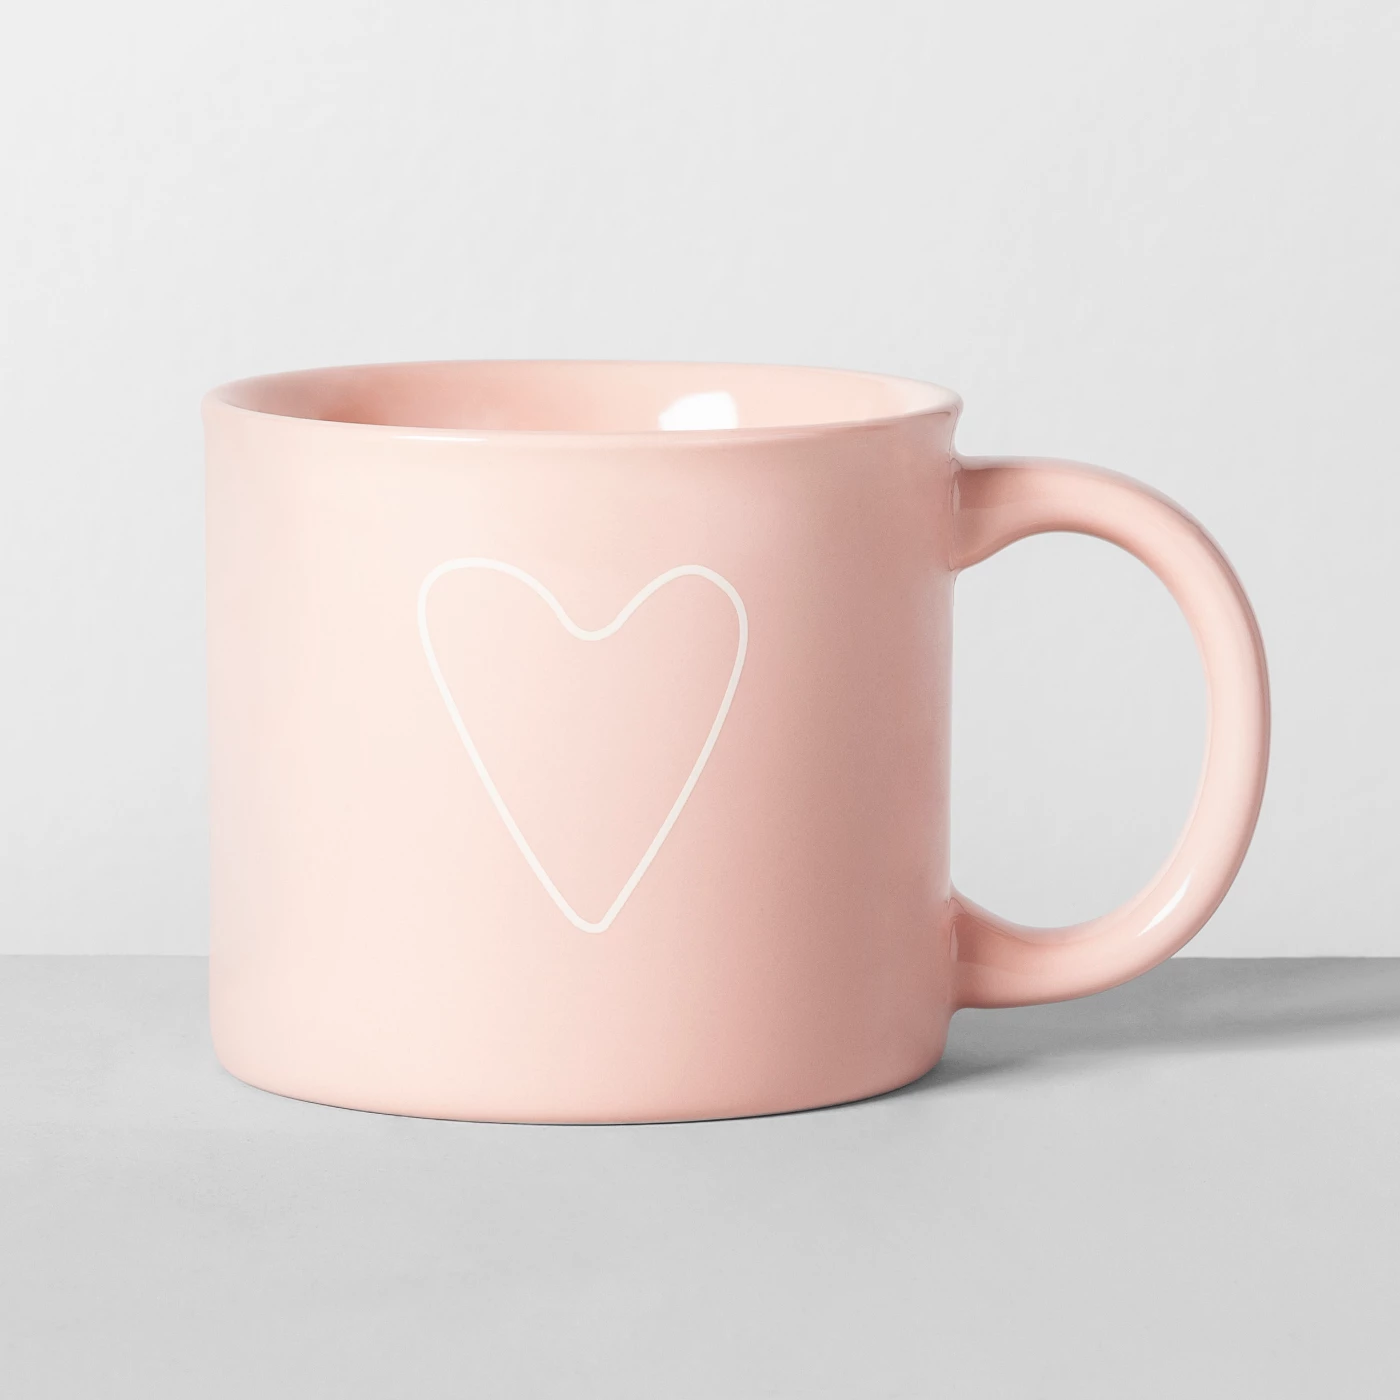 16oz Porcelain Heart Mug Pink - Opalhouseâ¢ - image 1 of 1